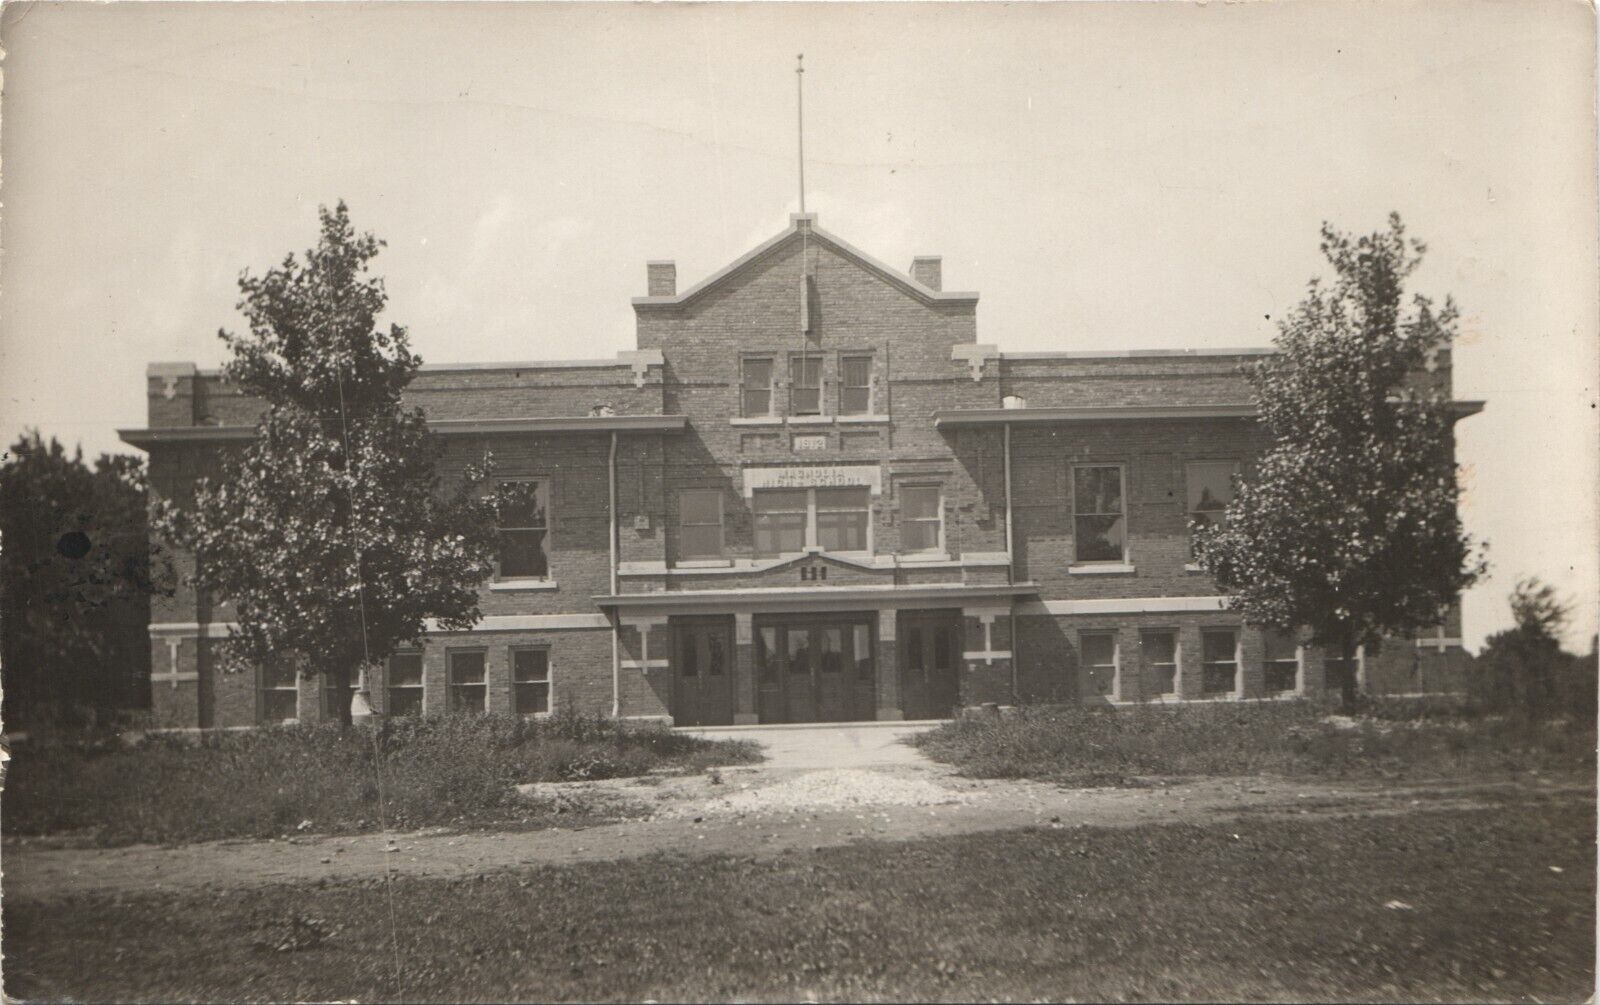 MAGNOLIA ILLINOIS HIGH SCHOOL real photo postcard IL PUBLIC BUILDING RPPC c1910